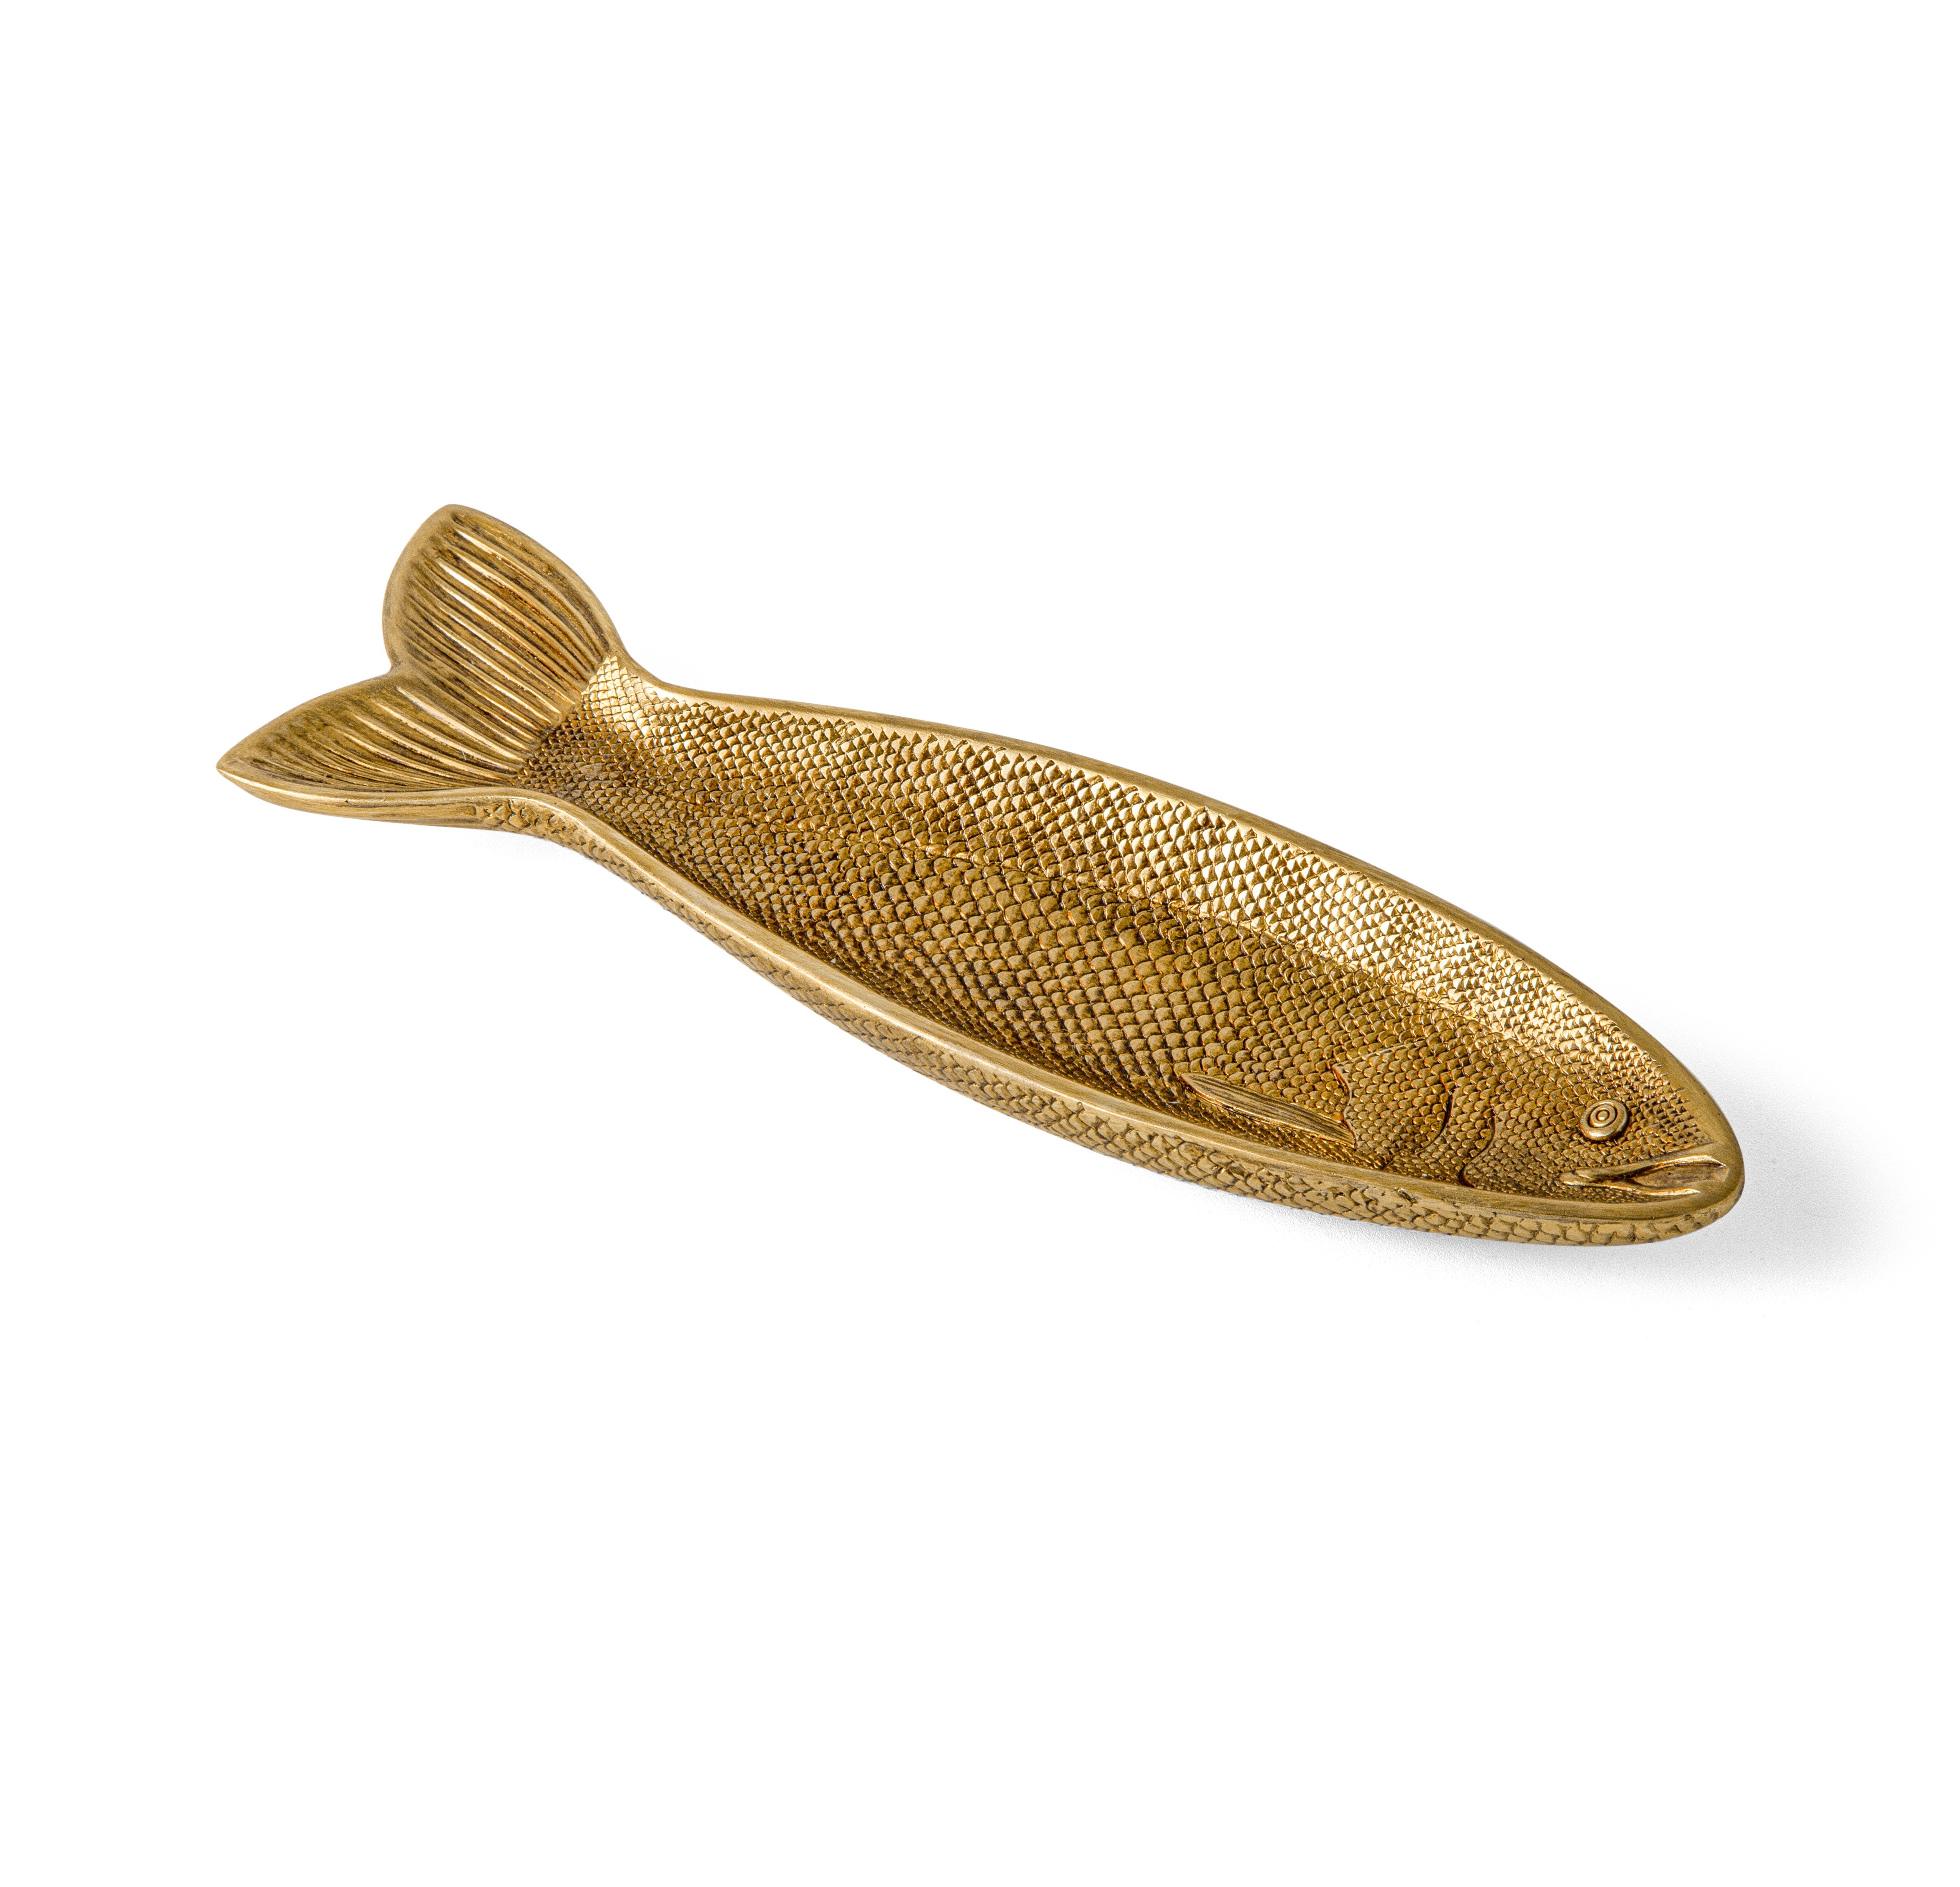 Bandeja Gold Fish - 20x6,5cm